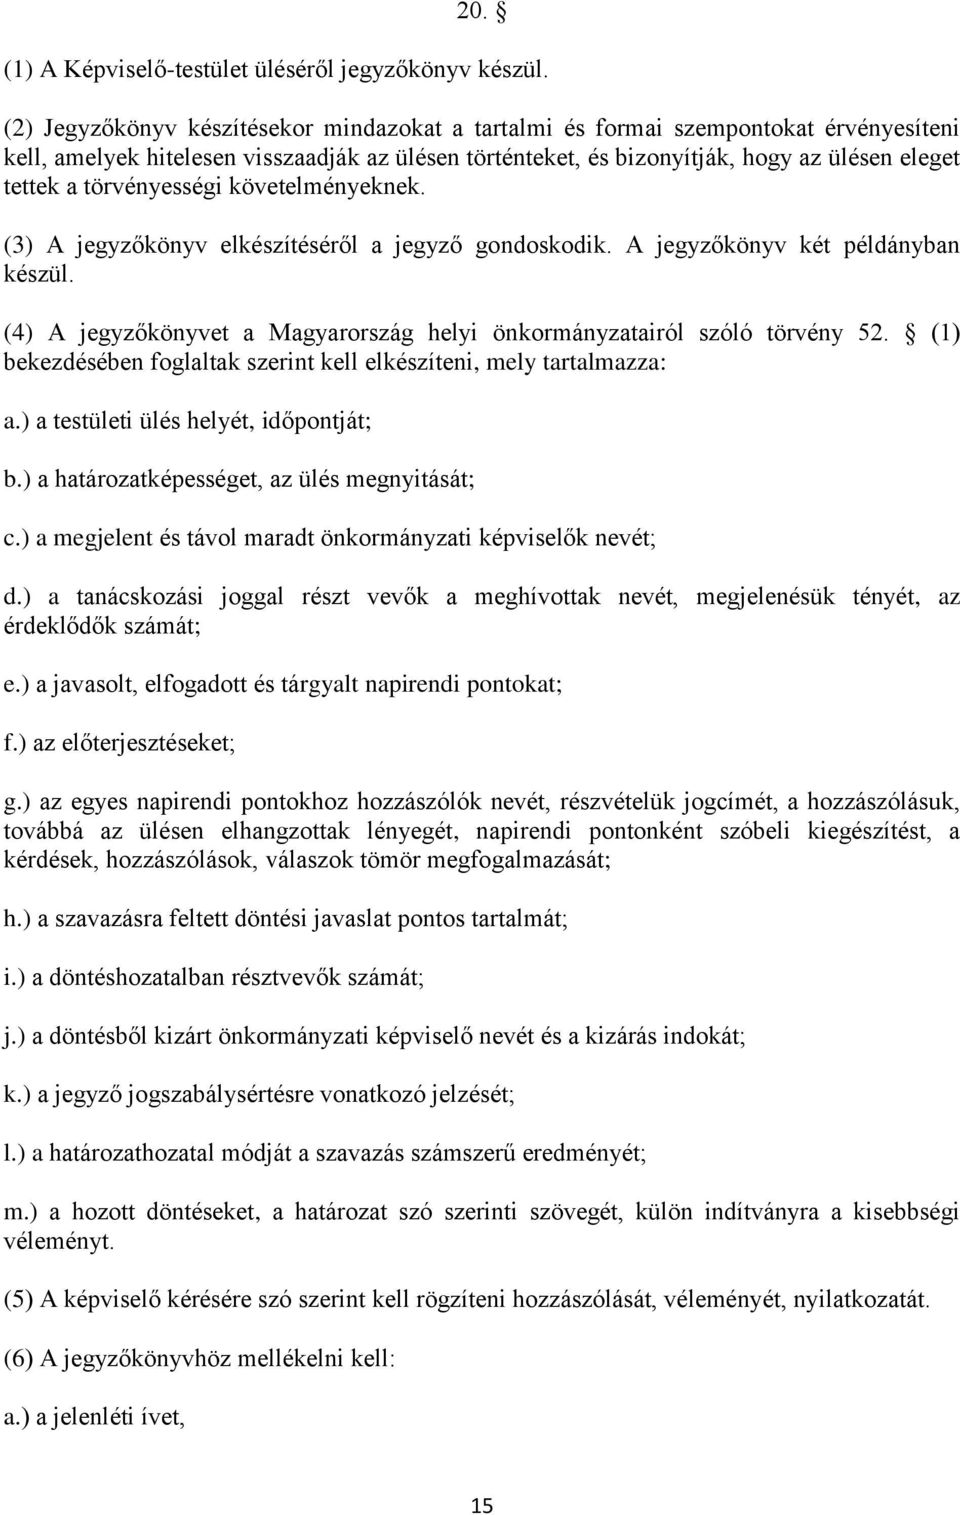 törvényességi követelményeknek. (3) A jegyzőkönyv elkészítéséről a jegyző gondoskodik. A jegyzőkönyv két példányban készül. (4) A jegyzőkönyvet a Magyarország helyi önkormányzatairól szóló törvény 52.